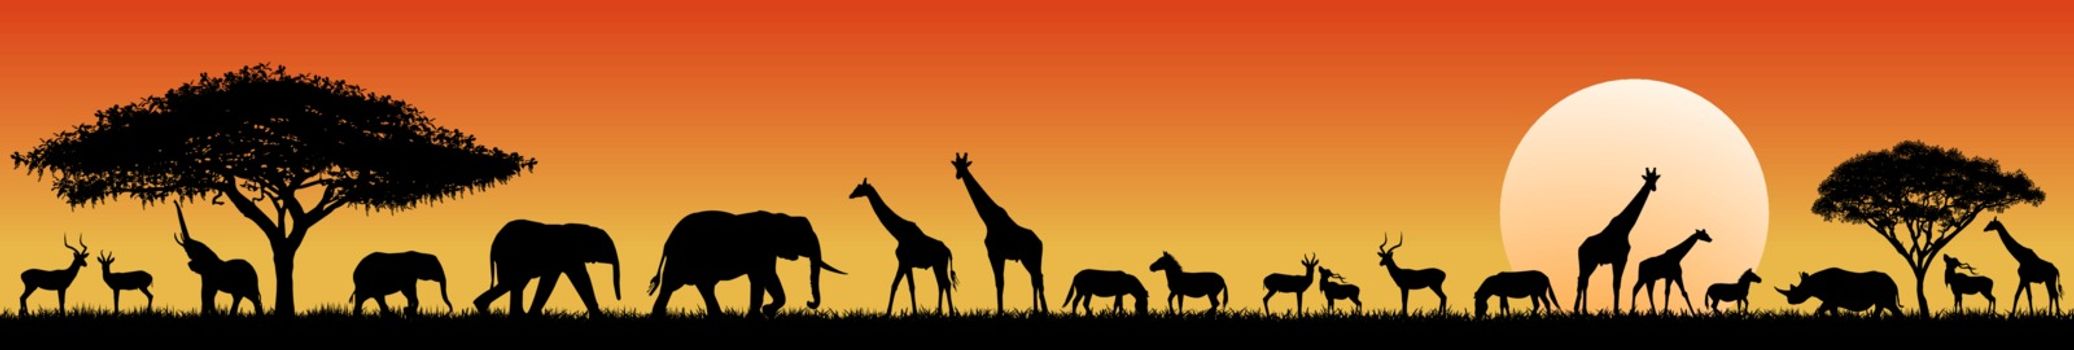 African savanna animals at sunset